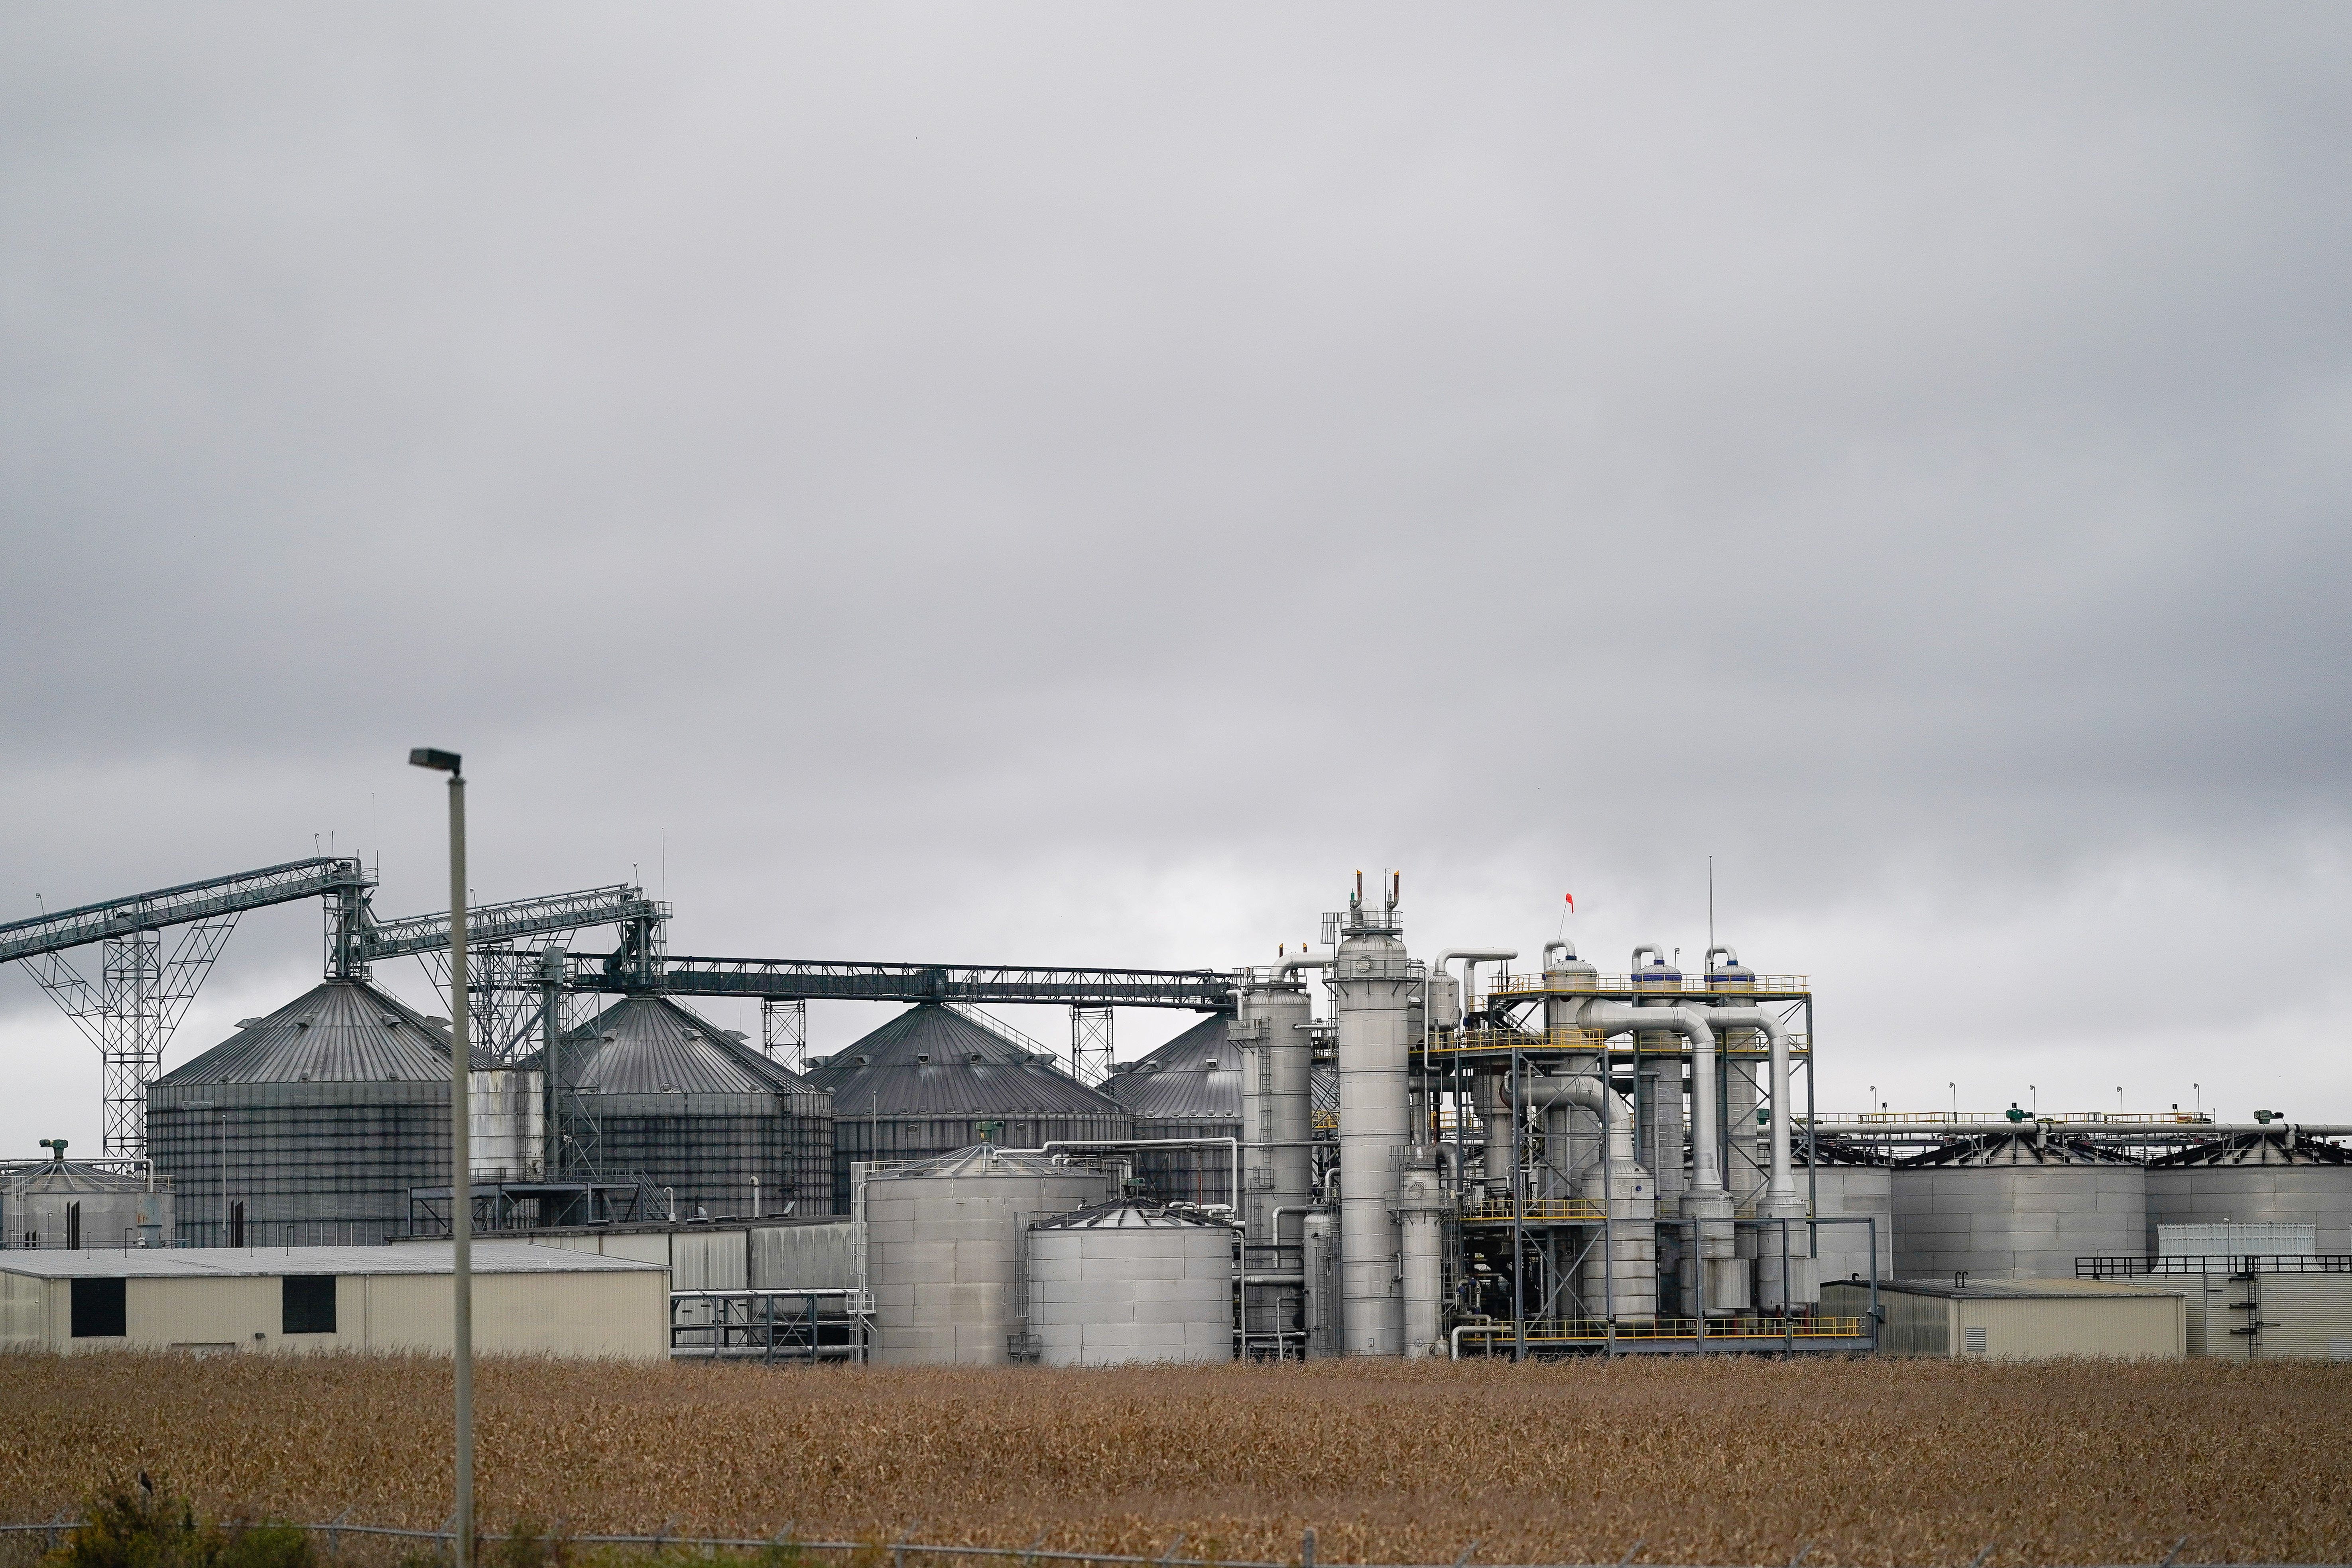 POET Biorefining plant in Cloverdale, Indiana, U.S. October 29, 2019. Picture taken October 29, 2019. REUTERS/Bryan Woolston